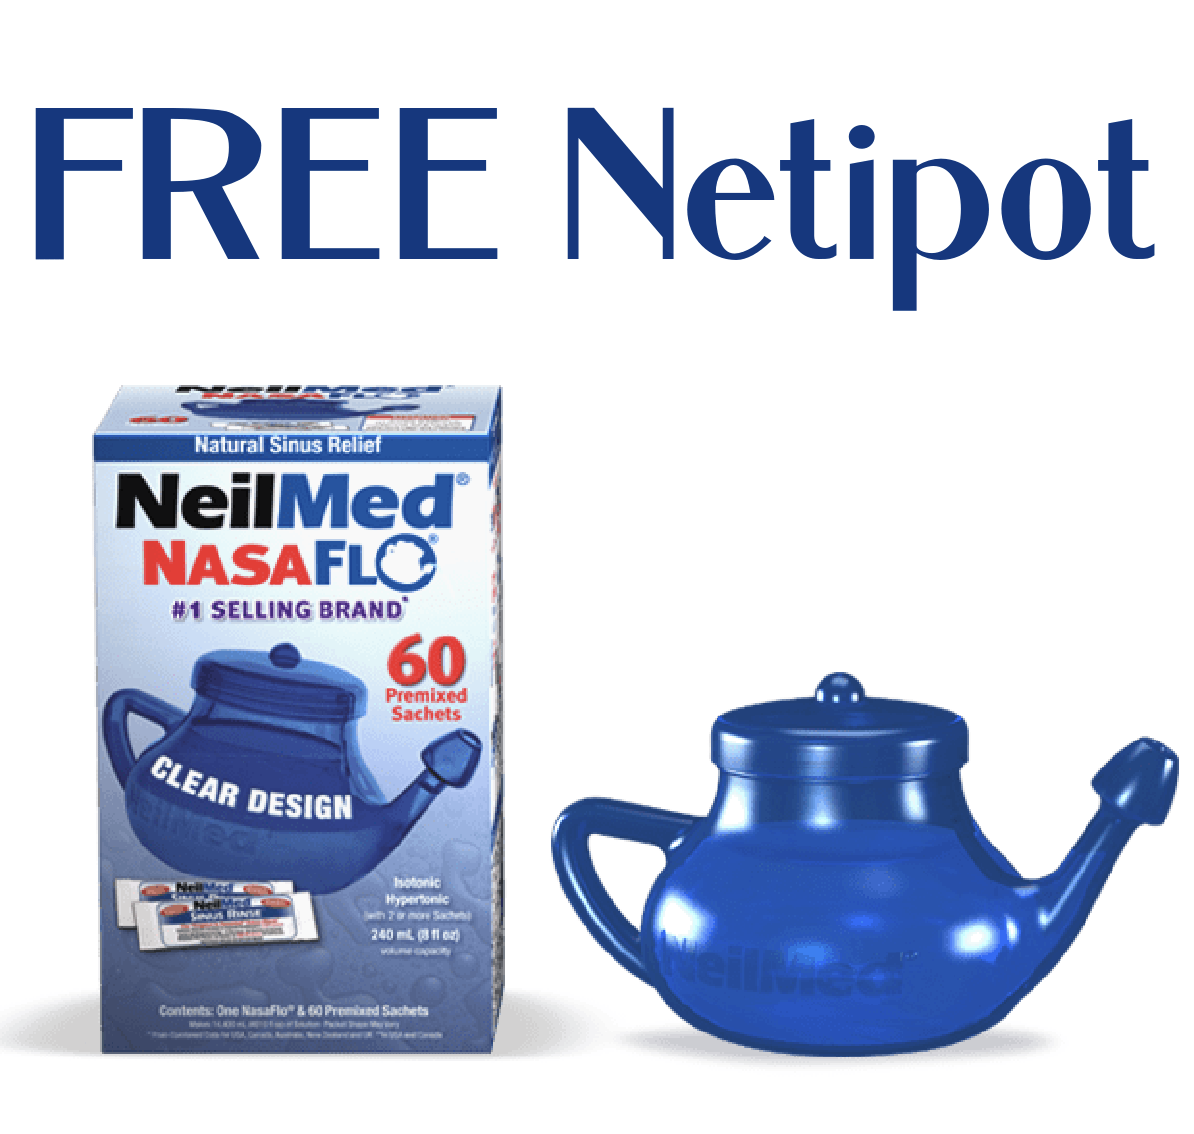 Free Neti Pot